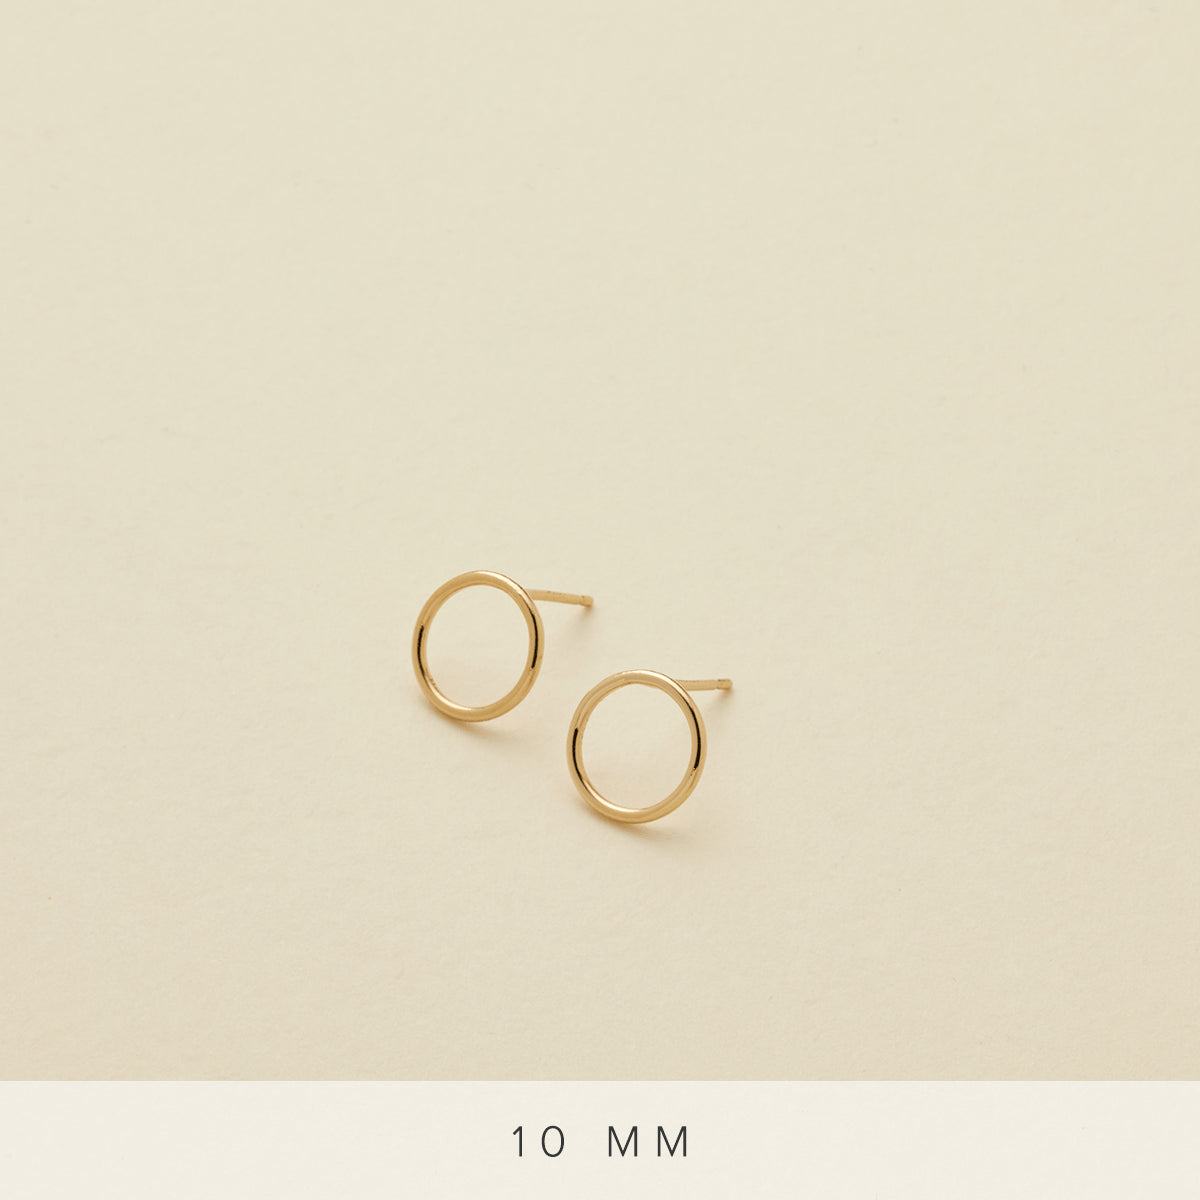 Circlet Earrings Gold Filled / 10mm Earring